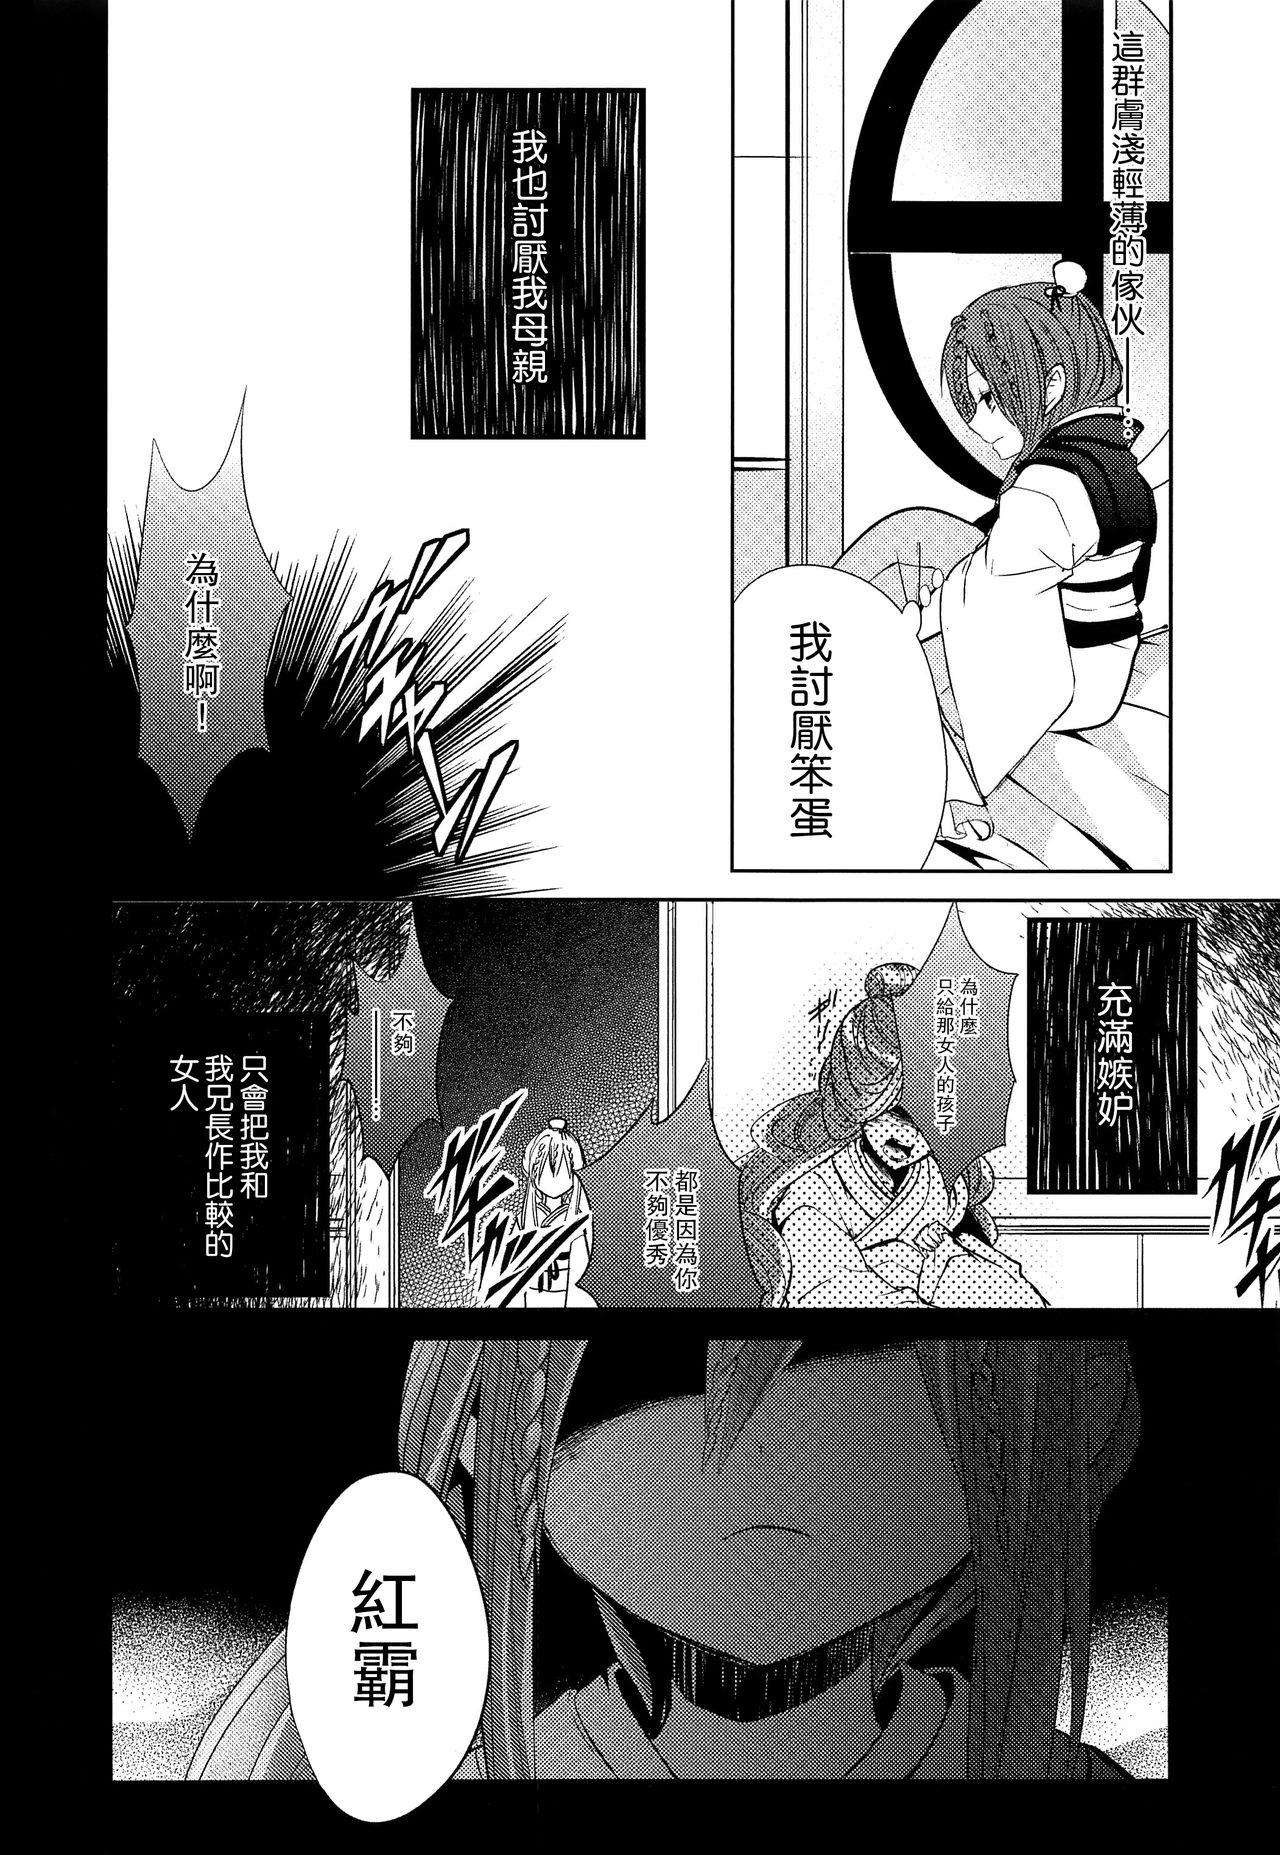 Chicks Tsuki ga Mieru Yoru ni - Magi the labyrinth of magic Pov Sex - Page 7